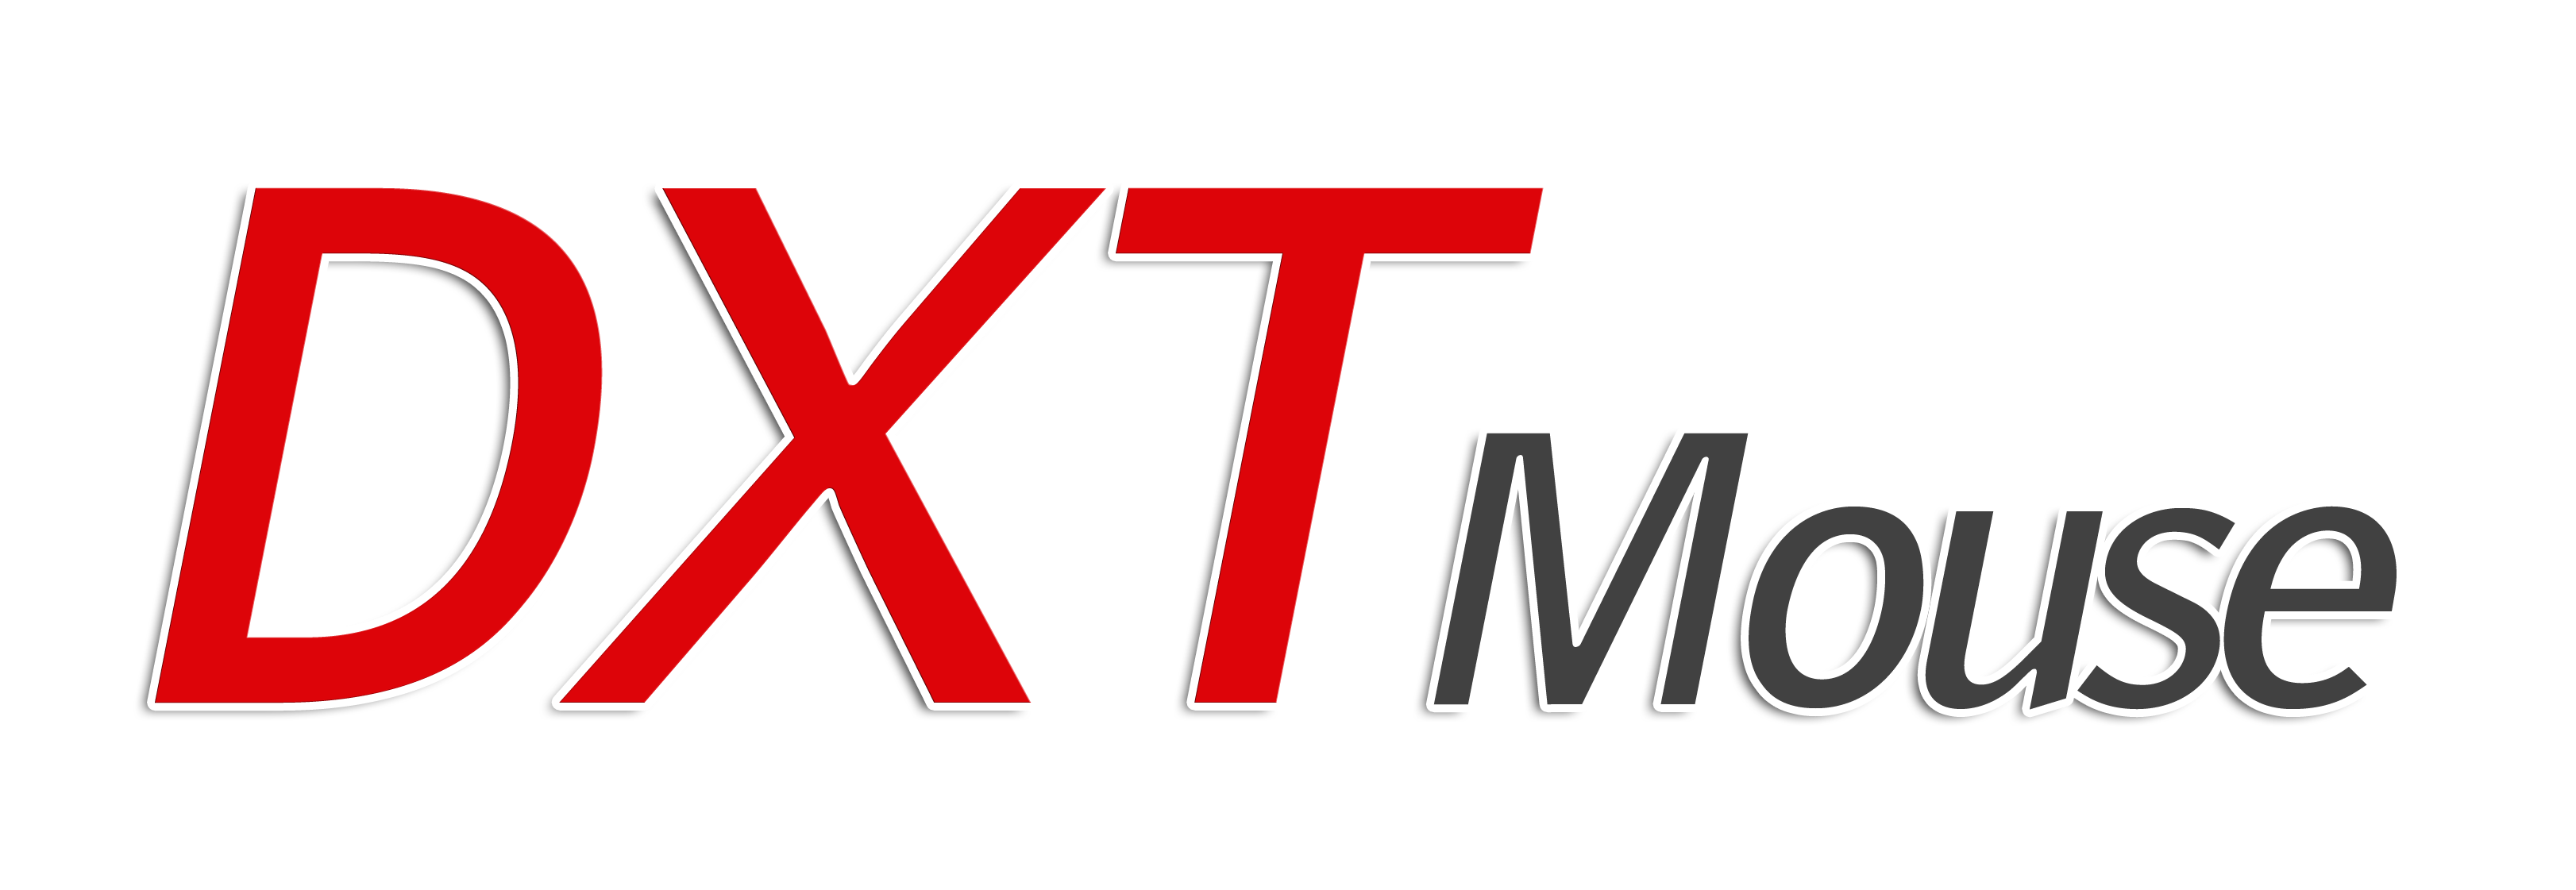 DXT Mouse Logo 